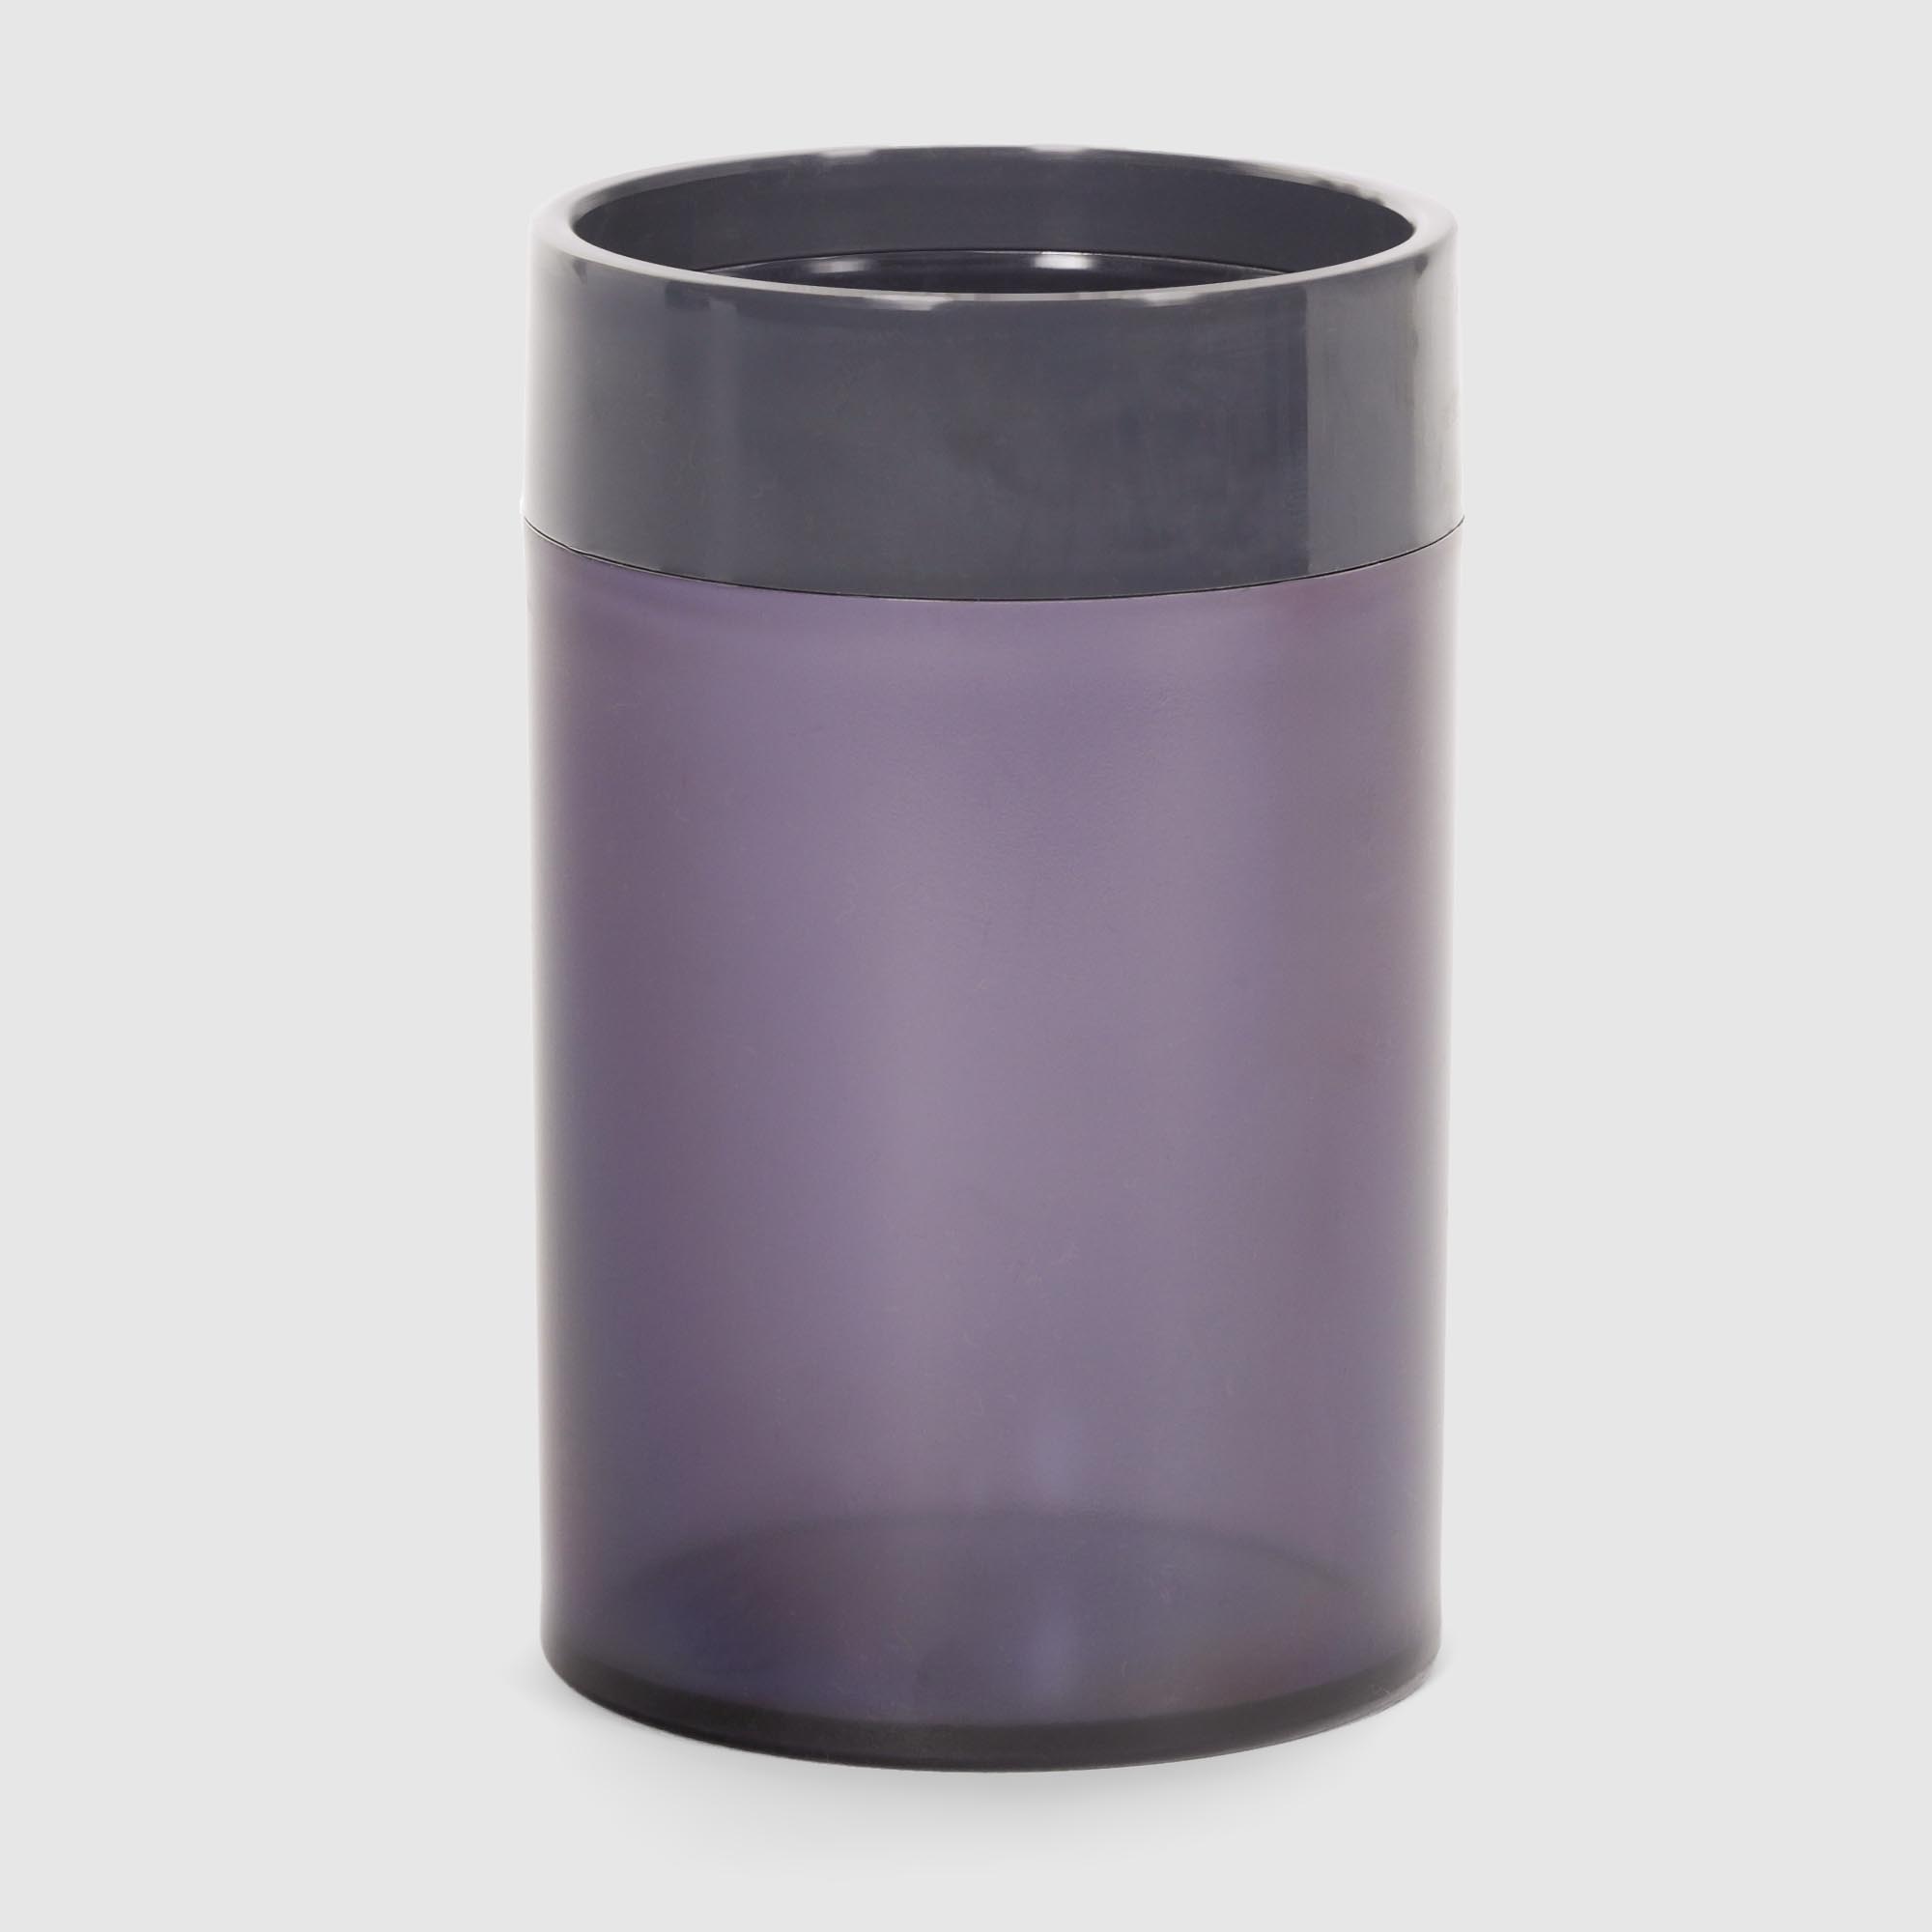 Стакан для зубных щеток Baroness Sanitary фиолетовый в ассортименте стакан тамблер wowbottles в ассортименте 400 мл